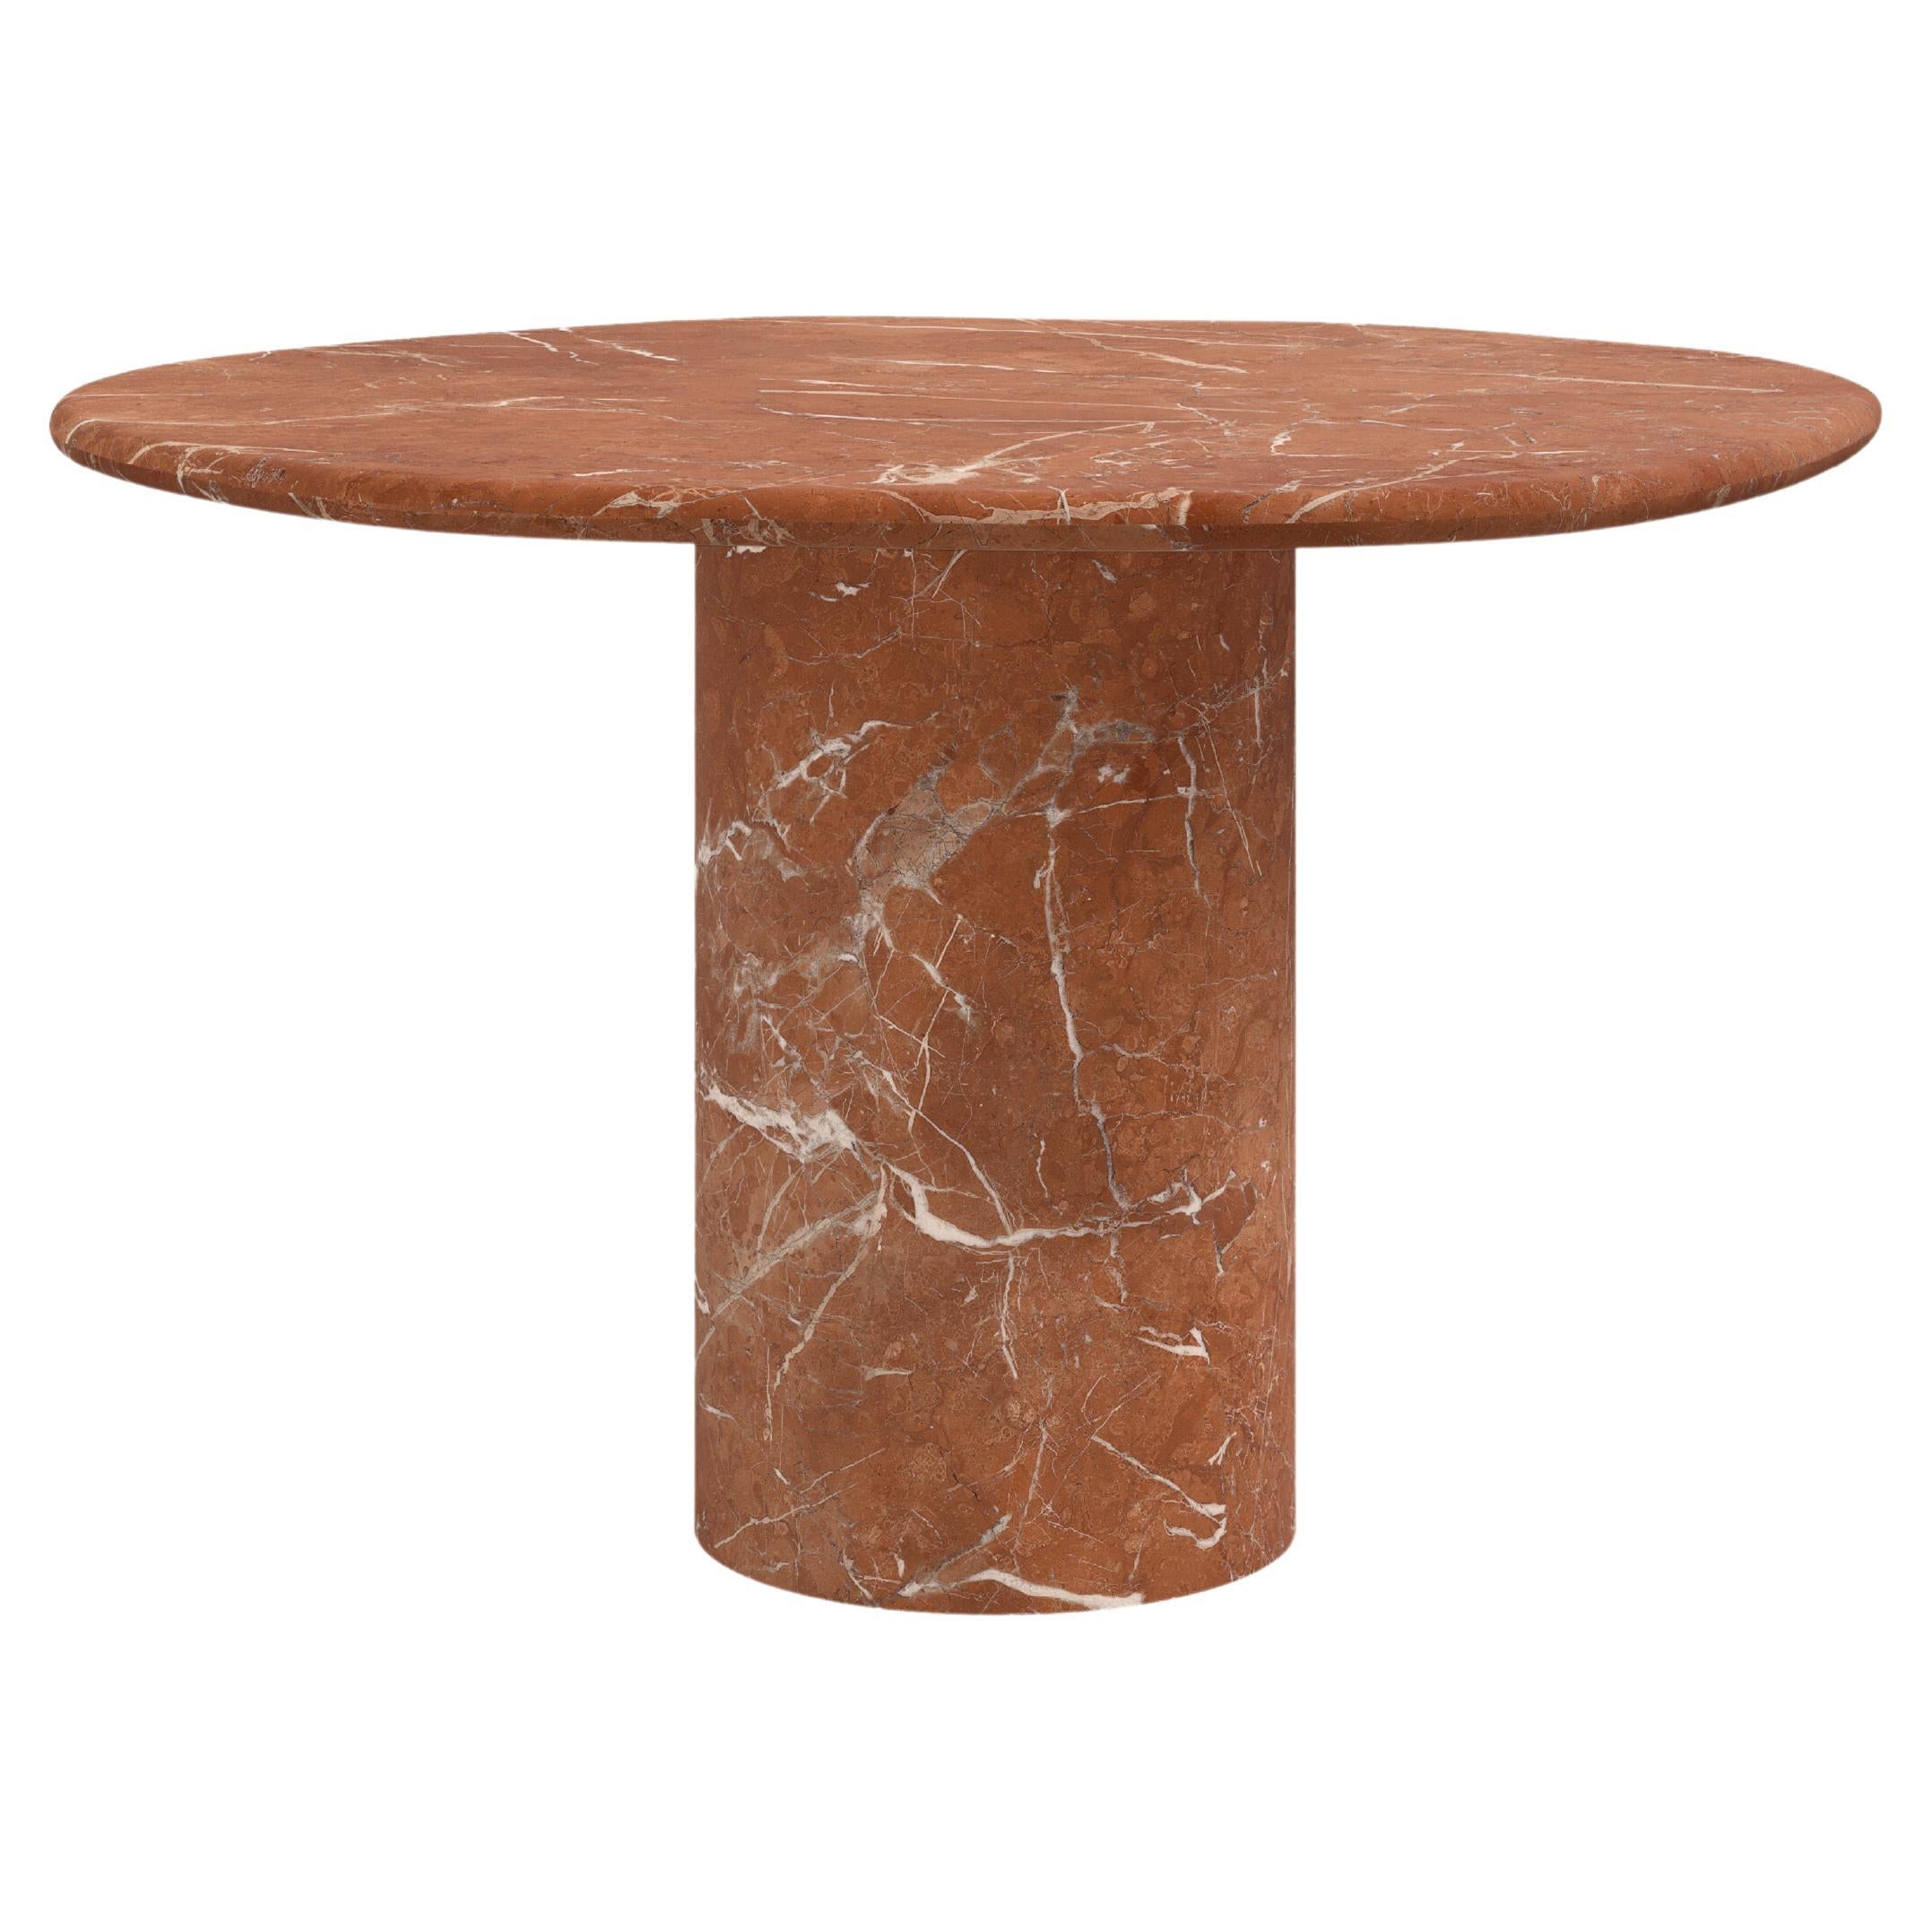 FORM(LA) Lago Round Dining Table 48”L x 48”W x 30”H Rojo Alicante Marble For Sale